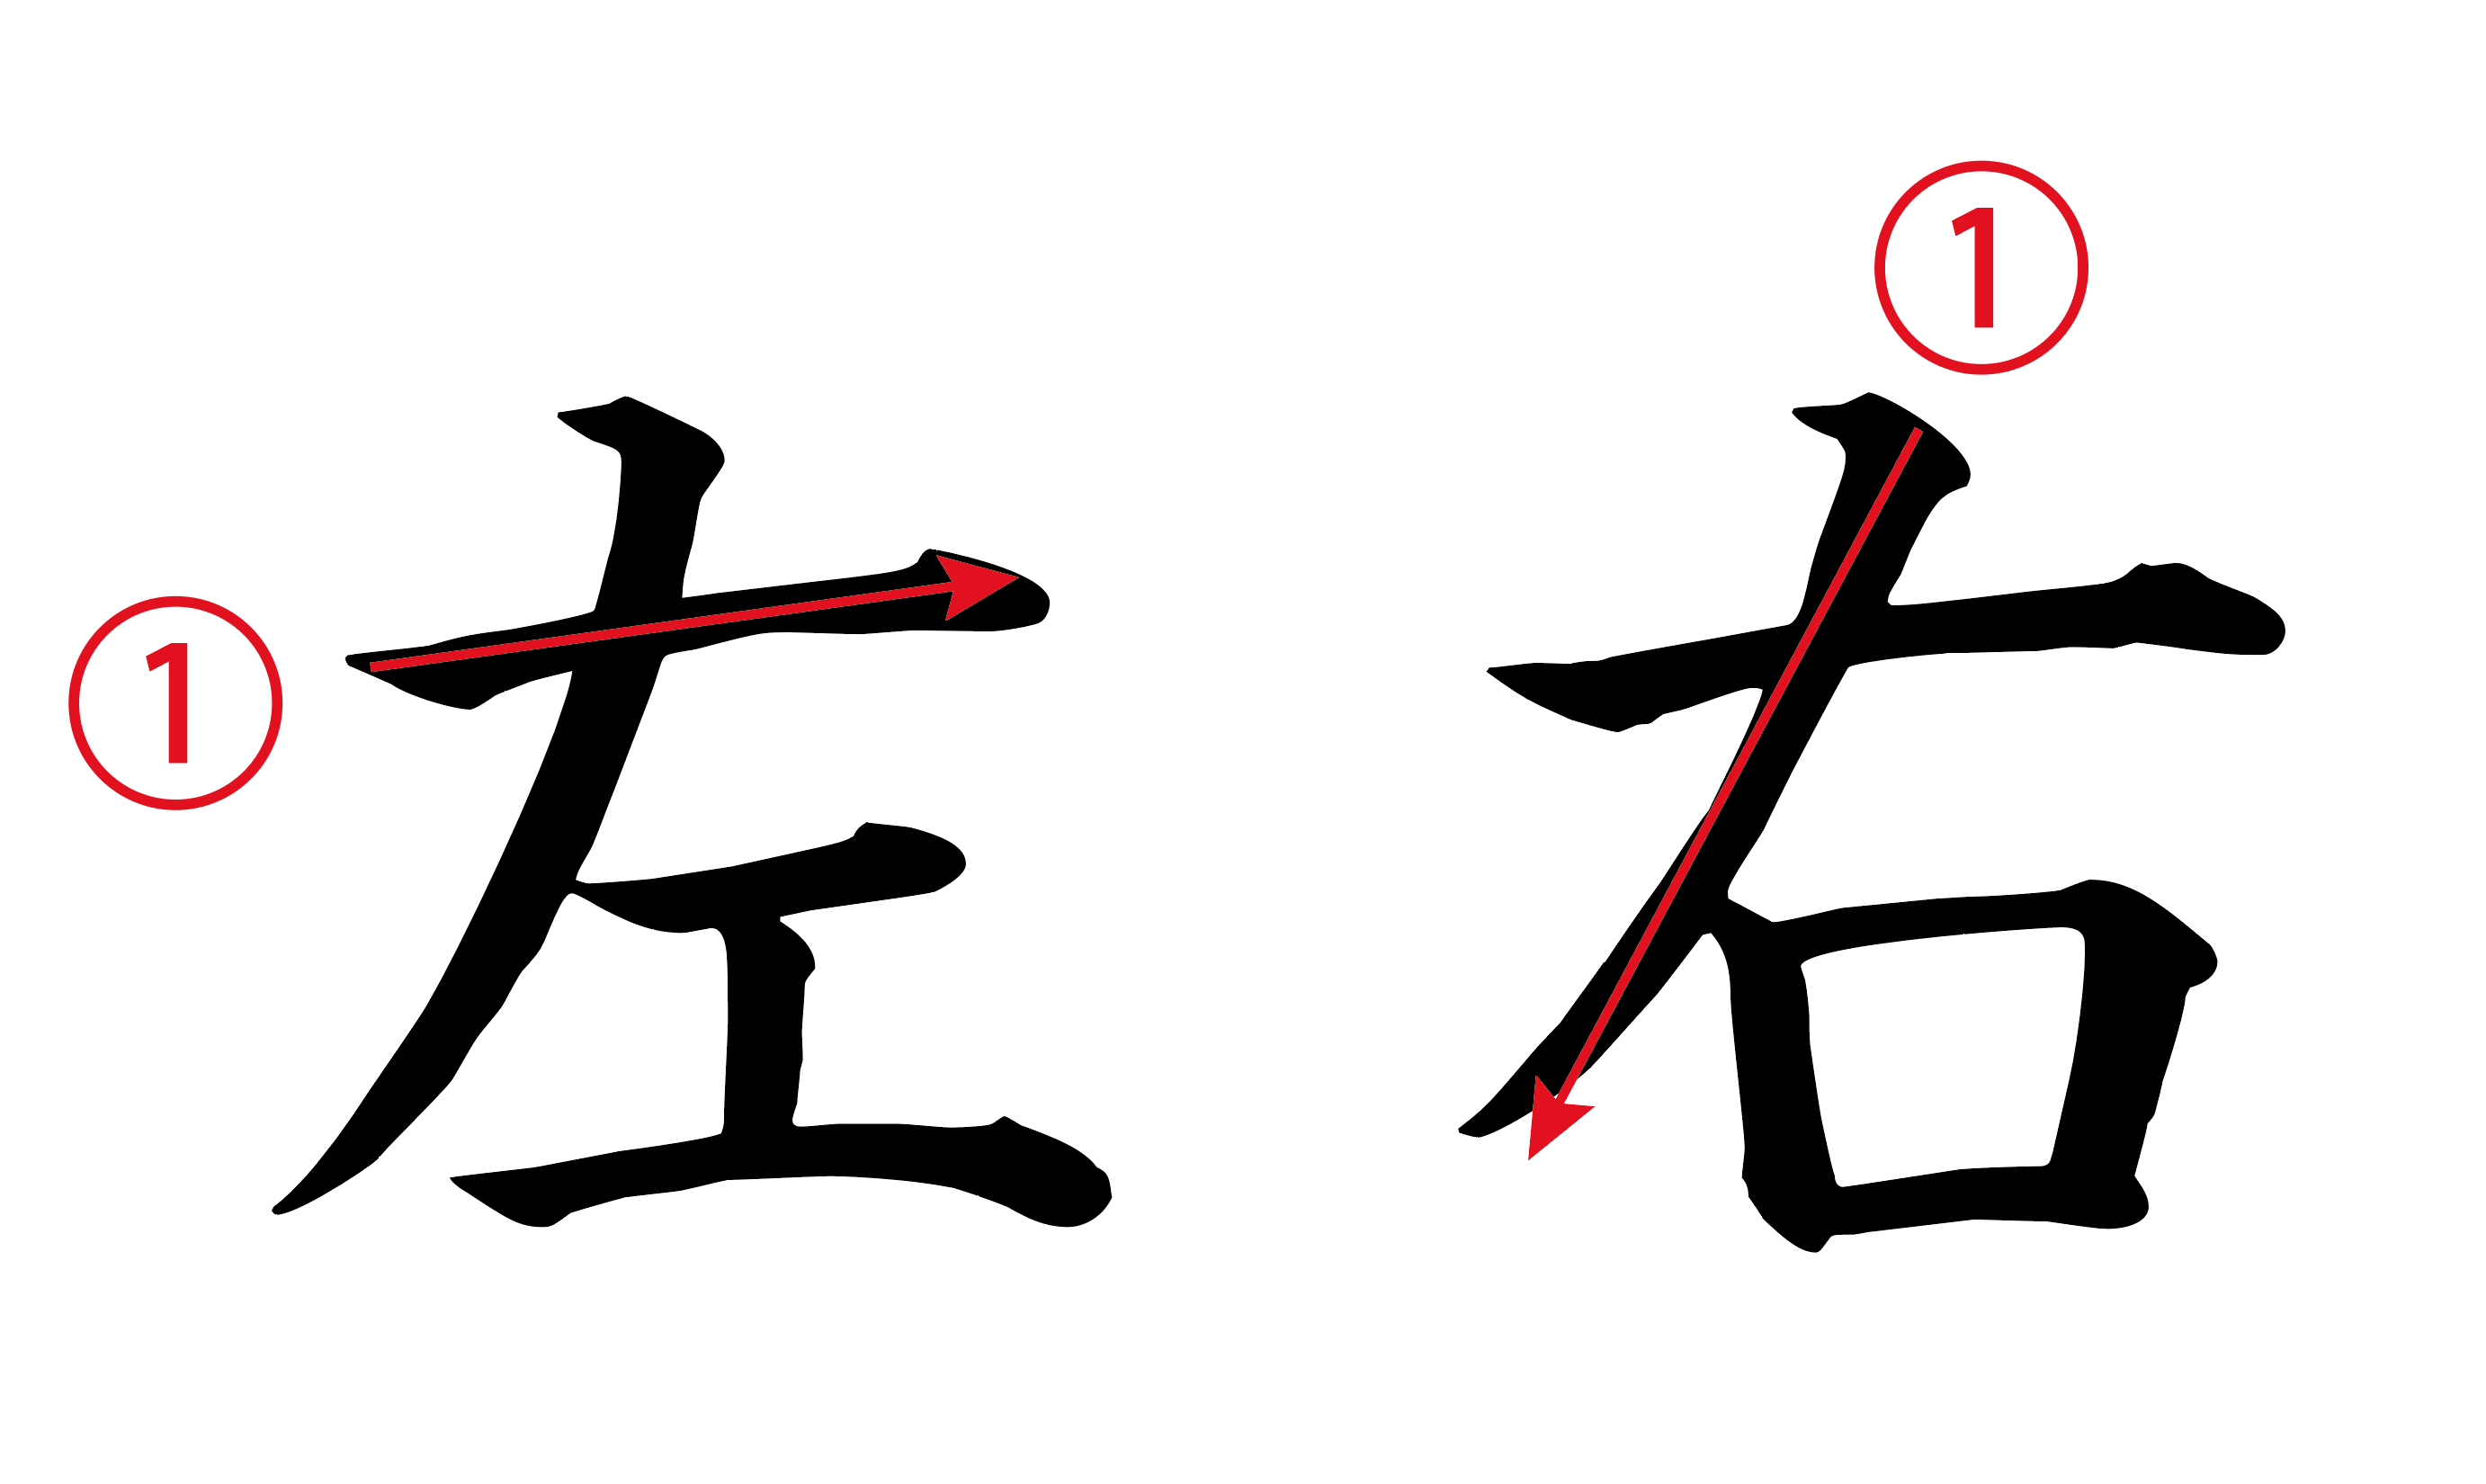 ねずこ漢字書き方